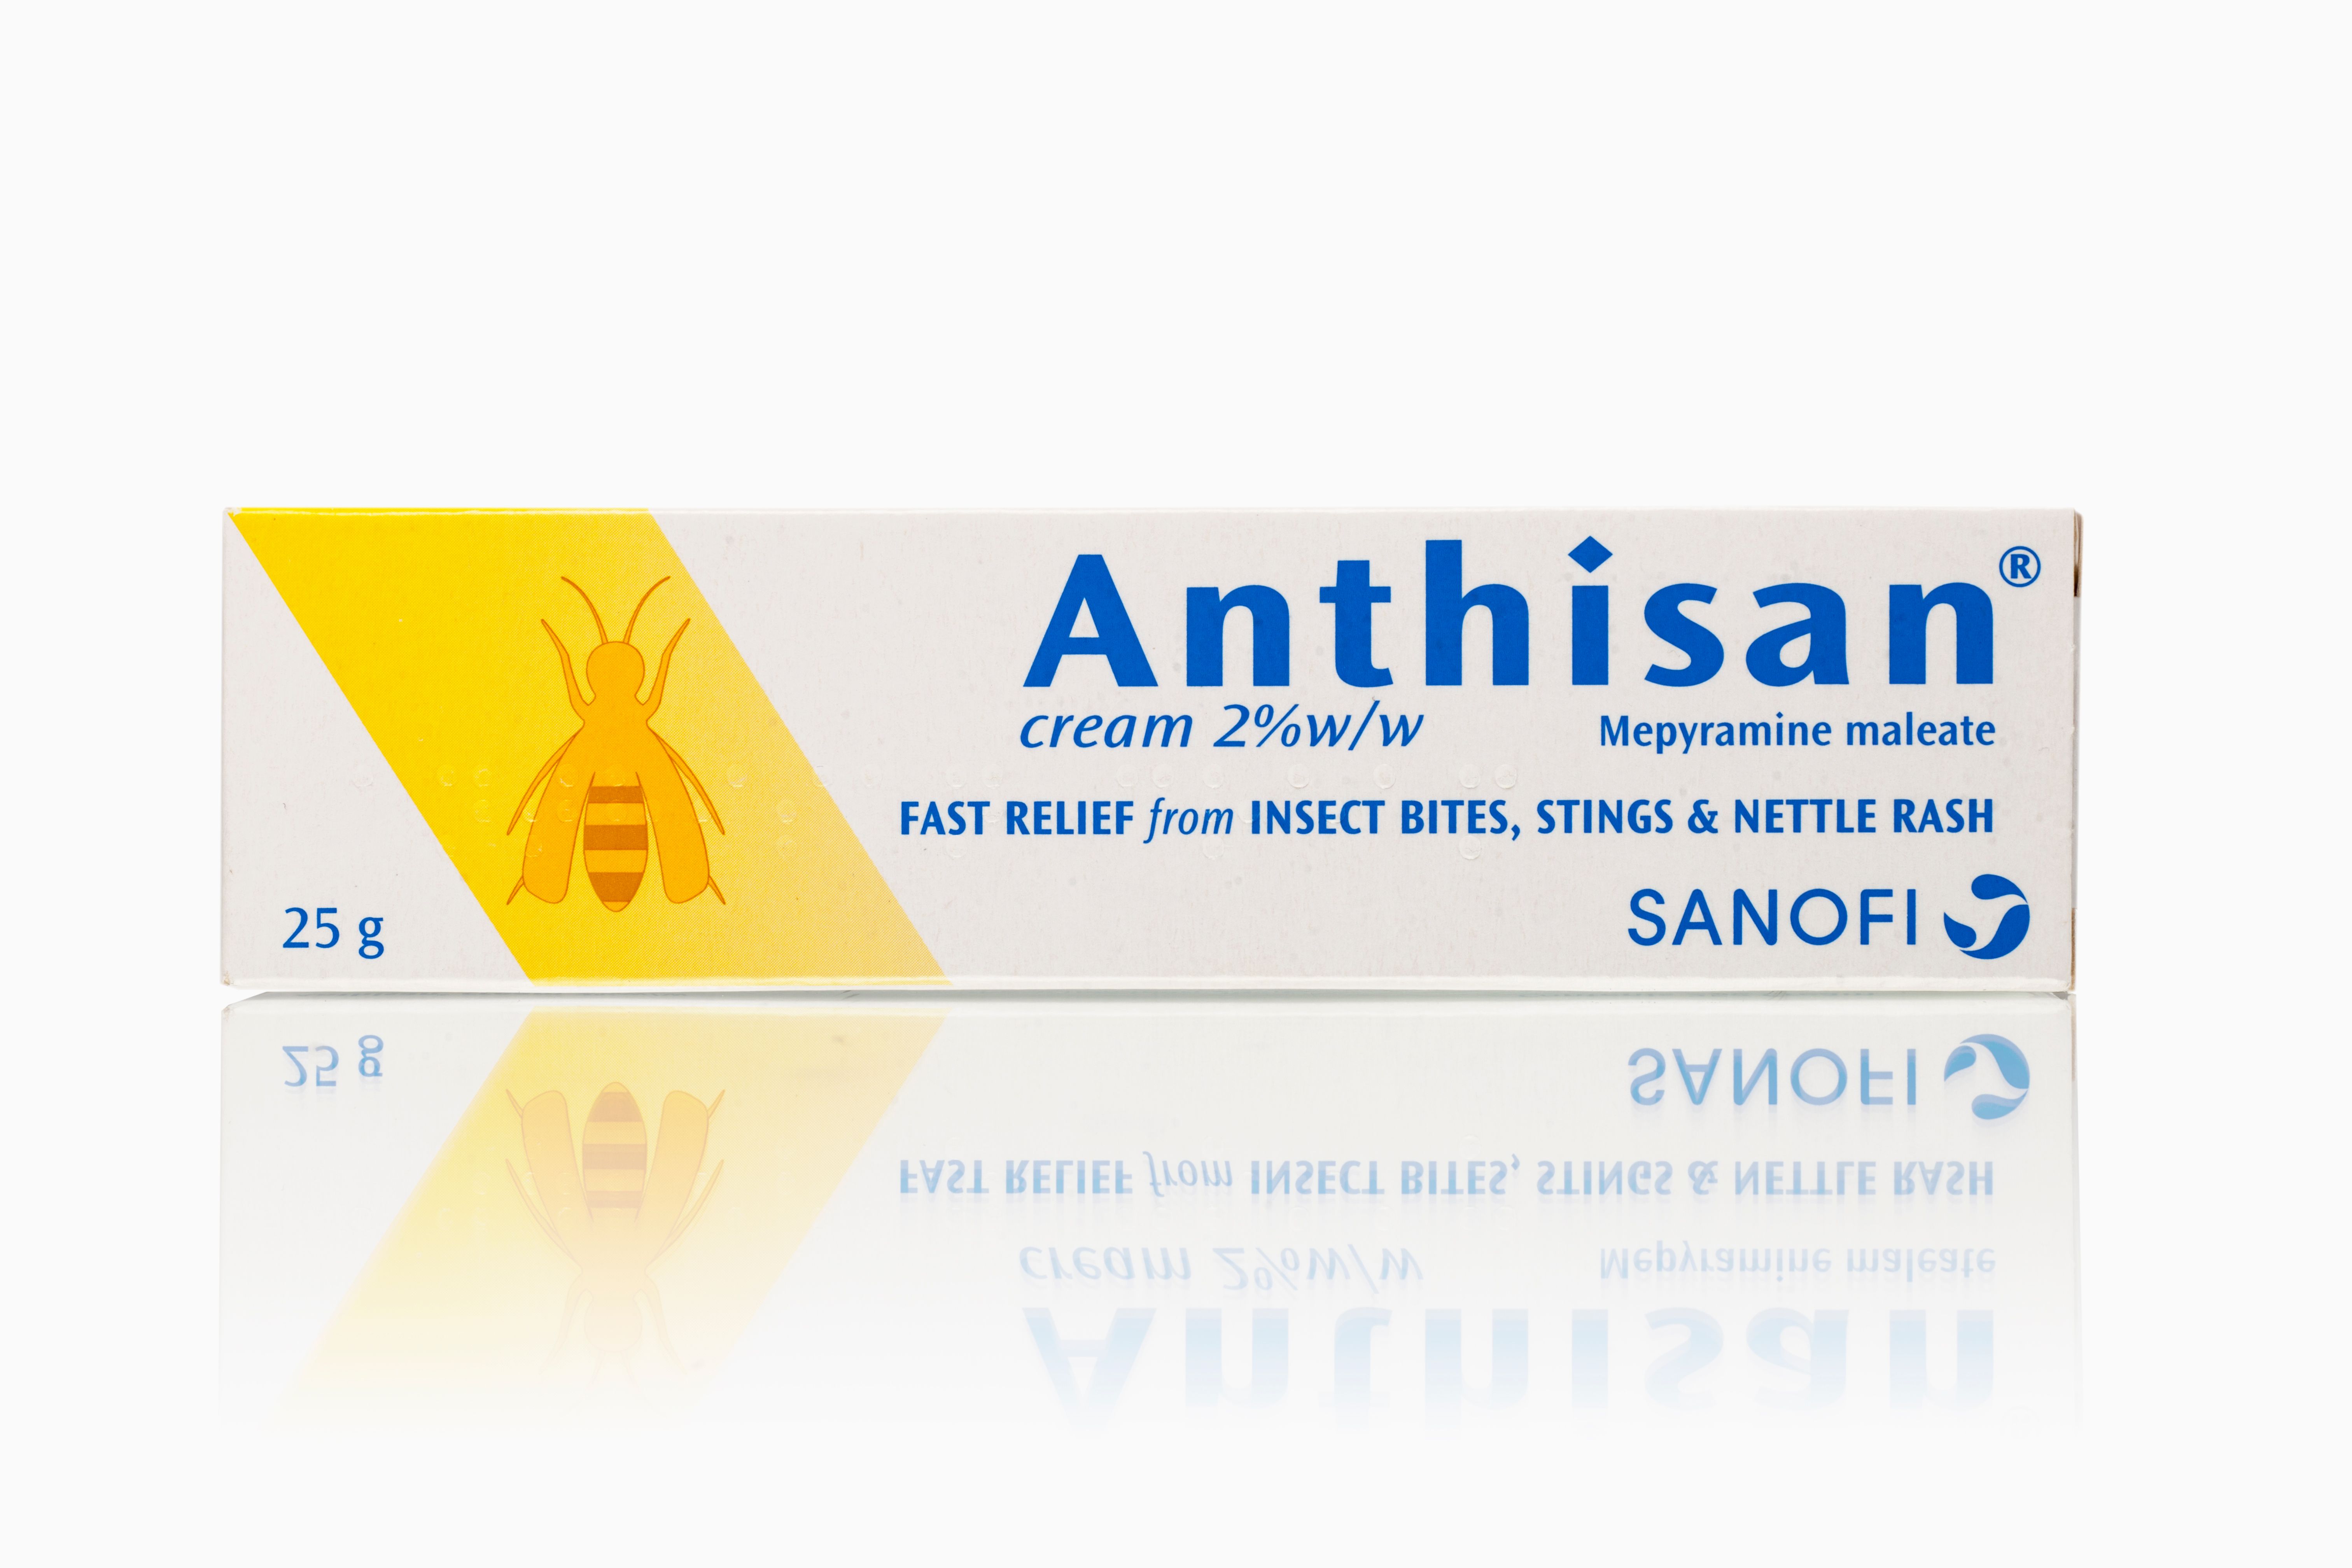 Anthisan-051